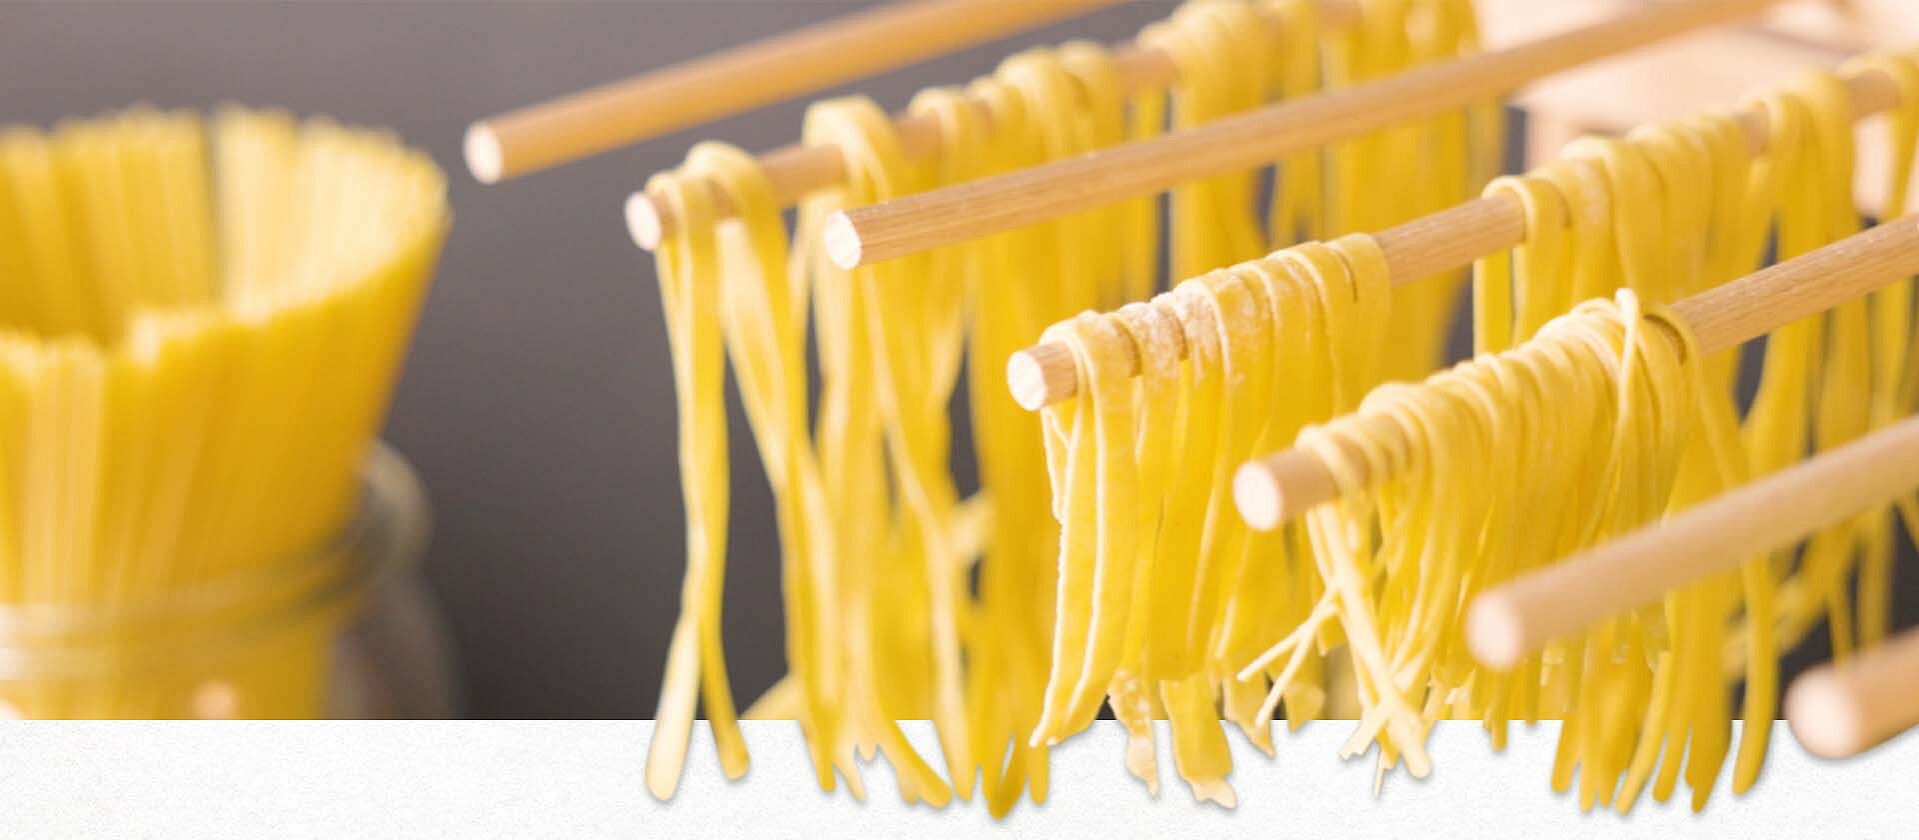 Selbstgemachte Pasta hängt zum Trocknen an mehreren Holzstäben